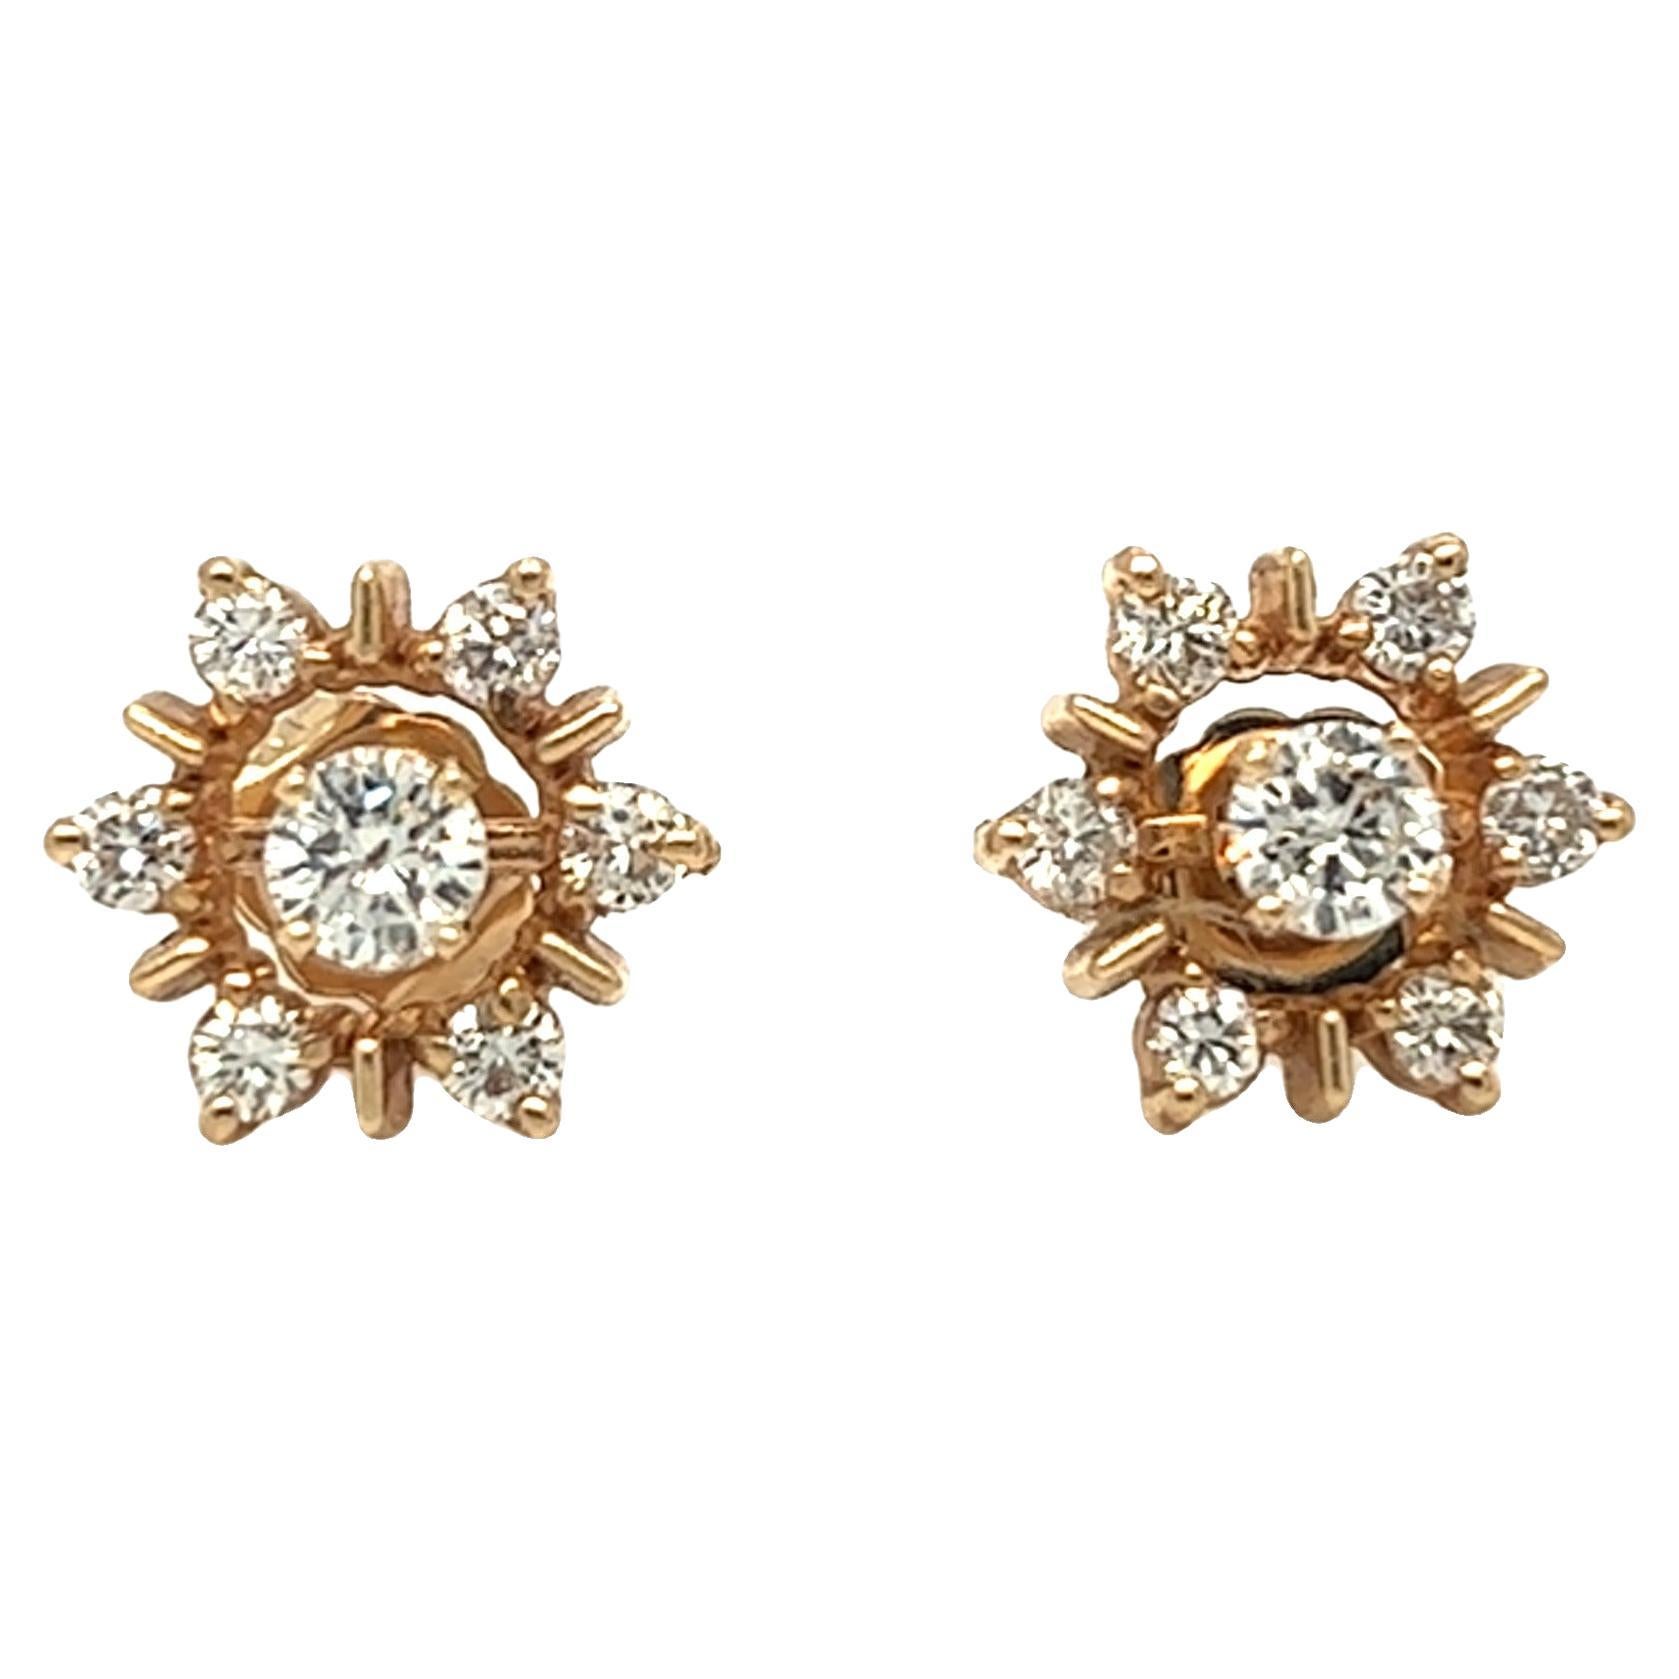 Vintage Starburst Cluster Diamond Earrings 14K Yellow Gold